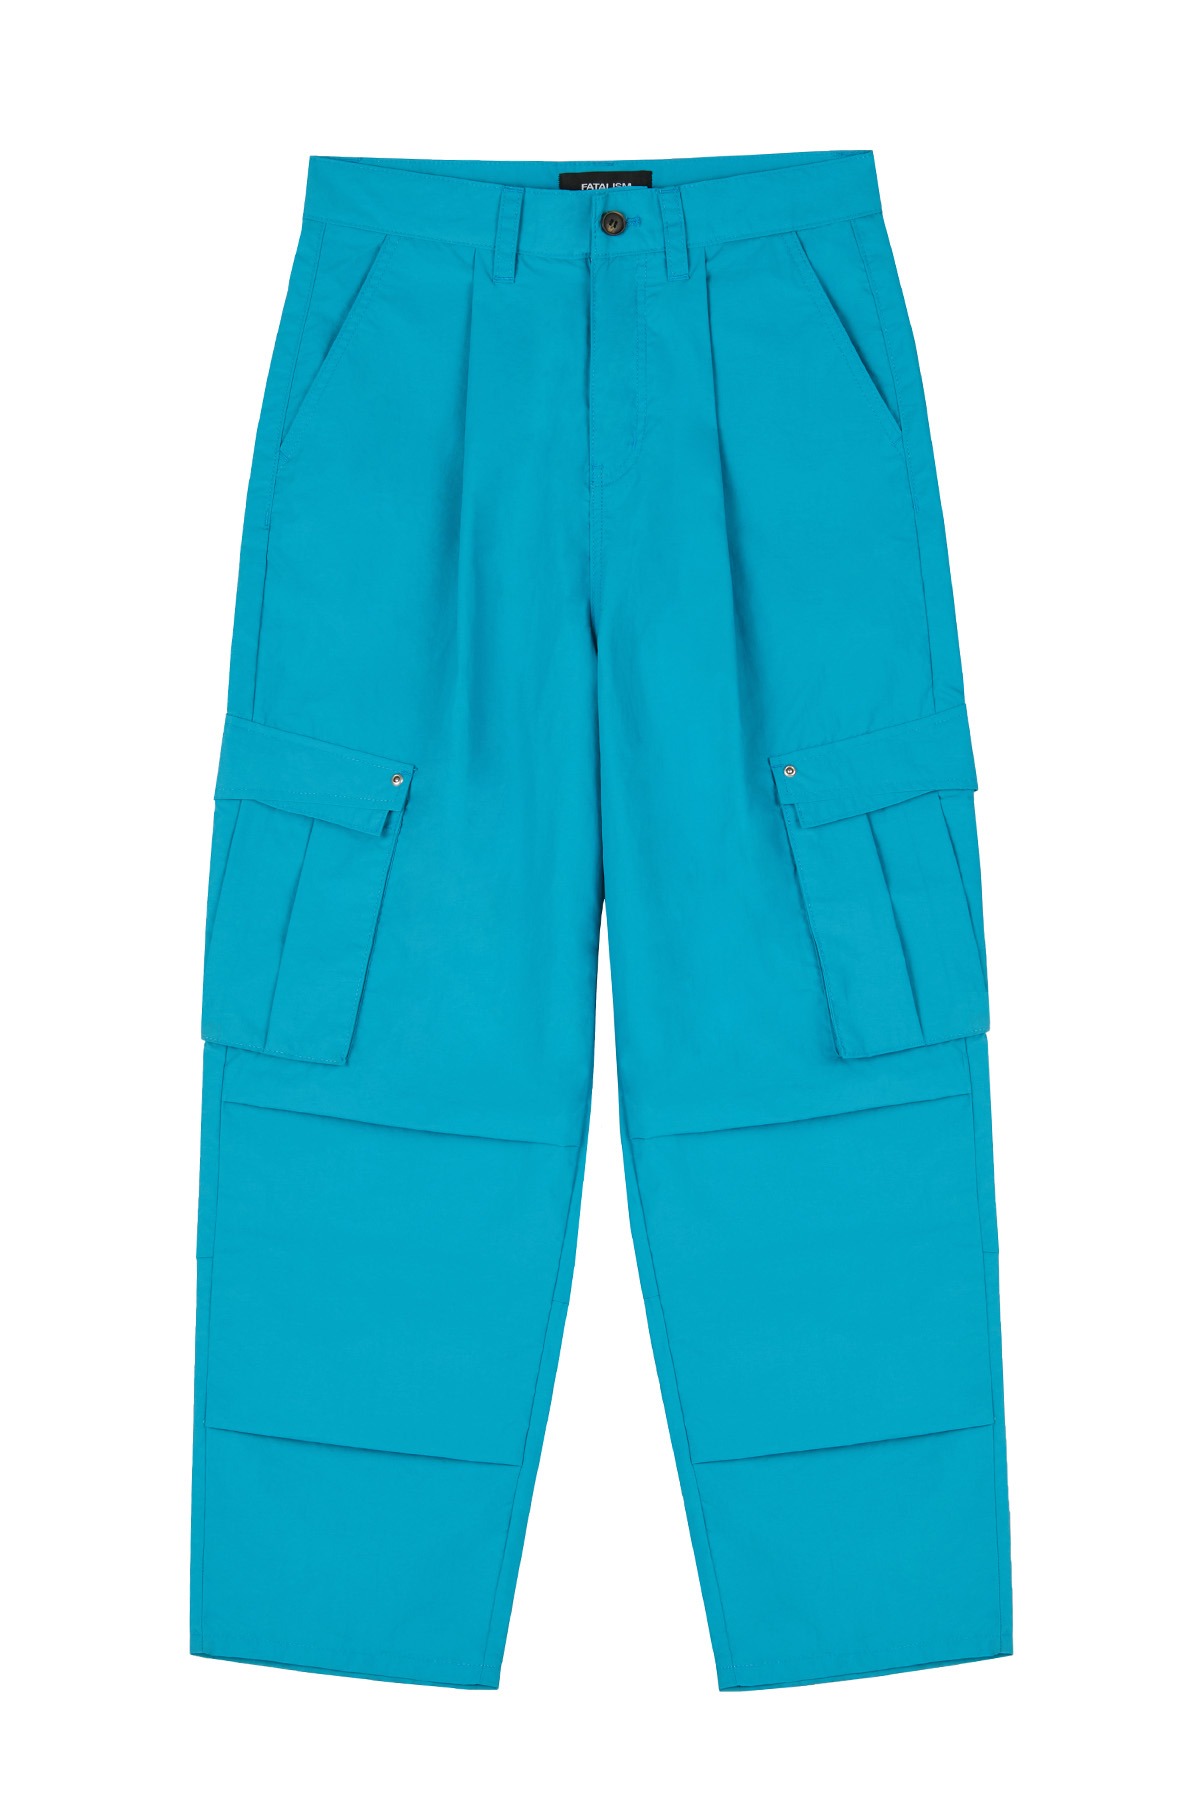 [06/28 예약배송] #0349 Military cargo pants blue